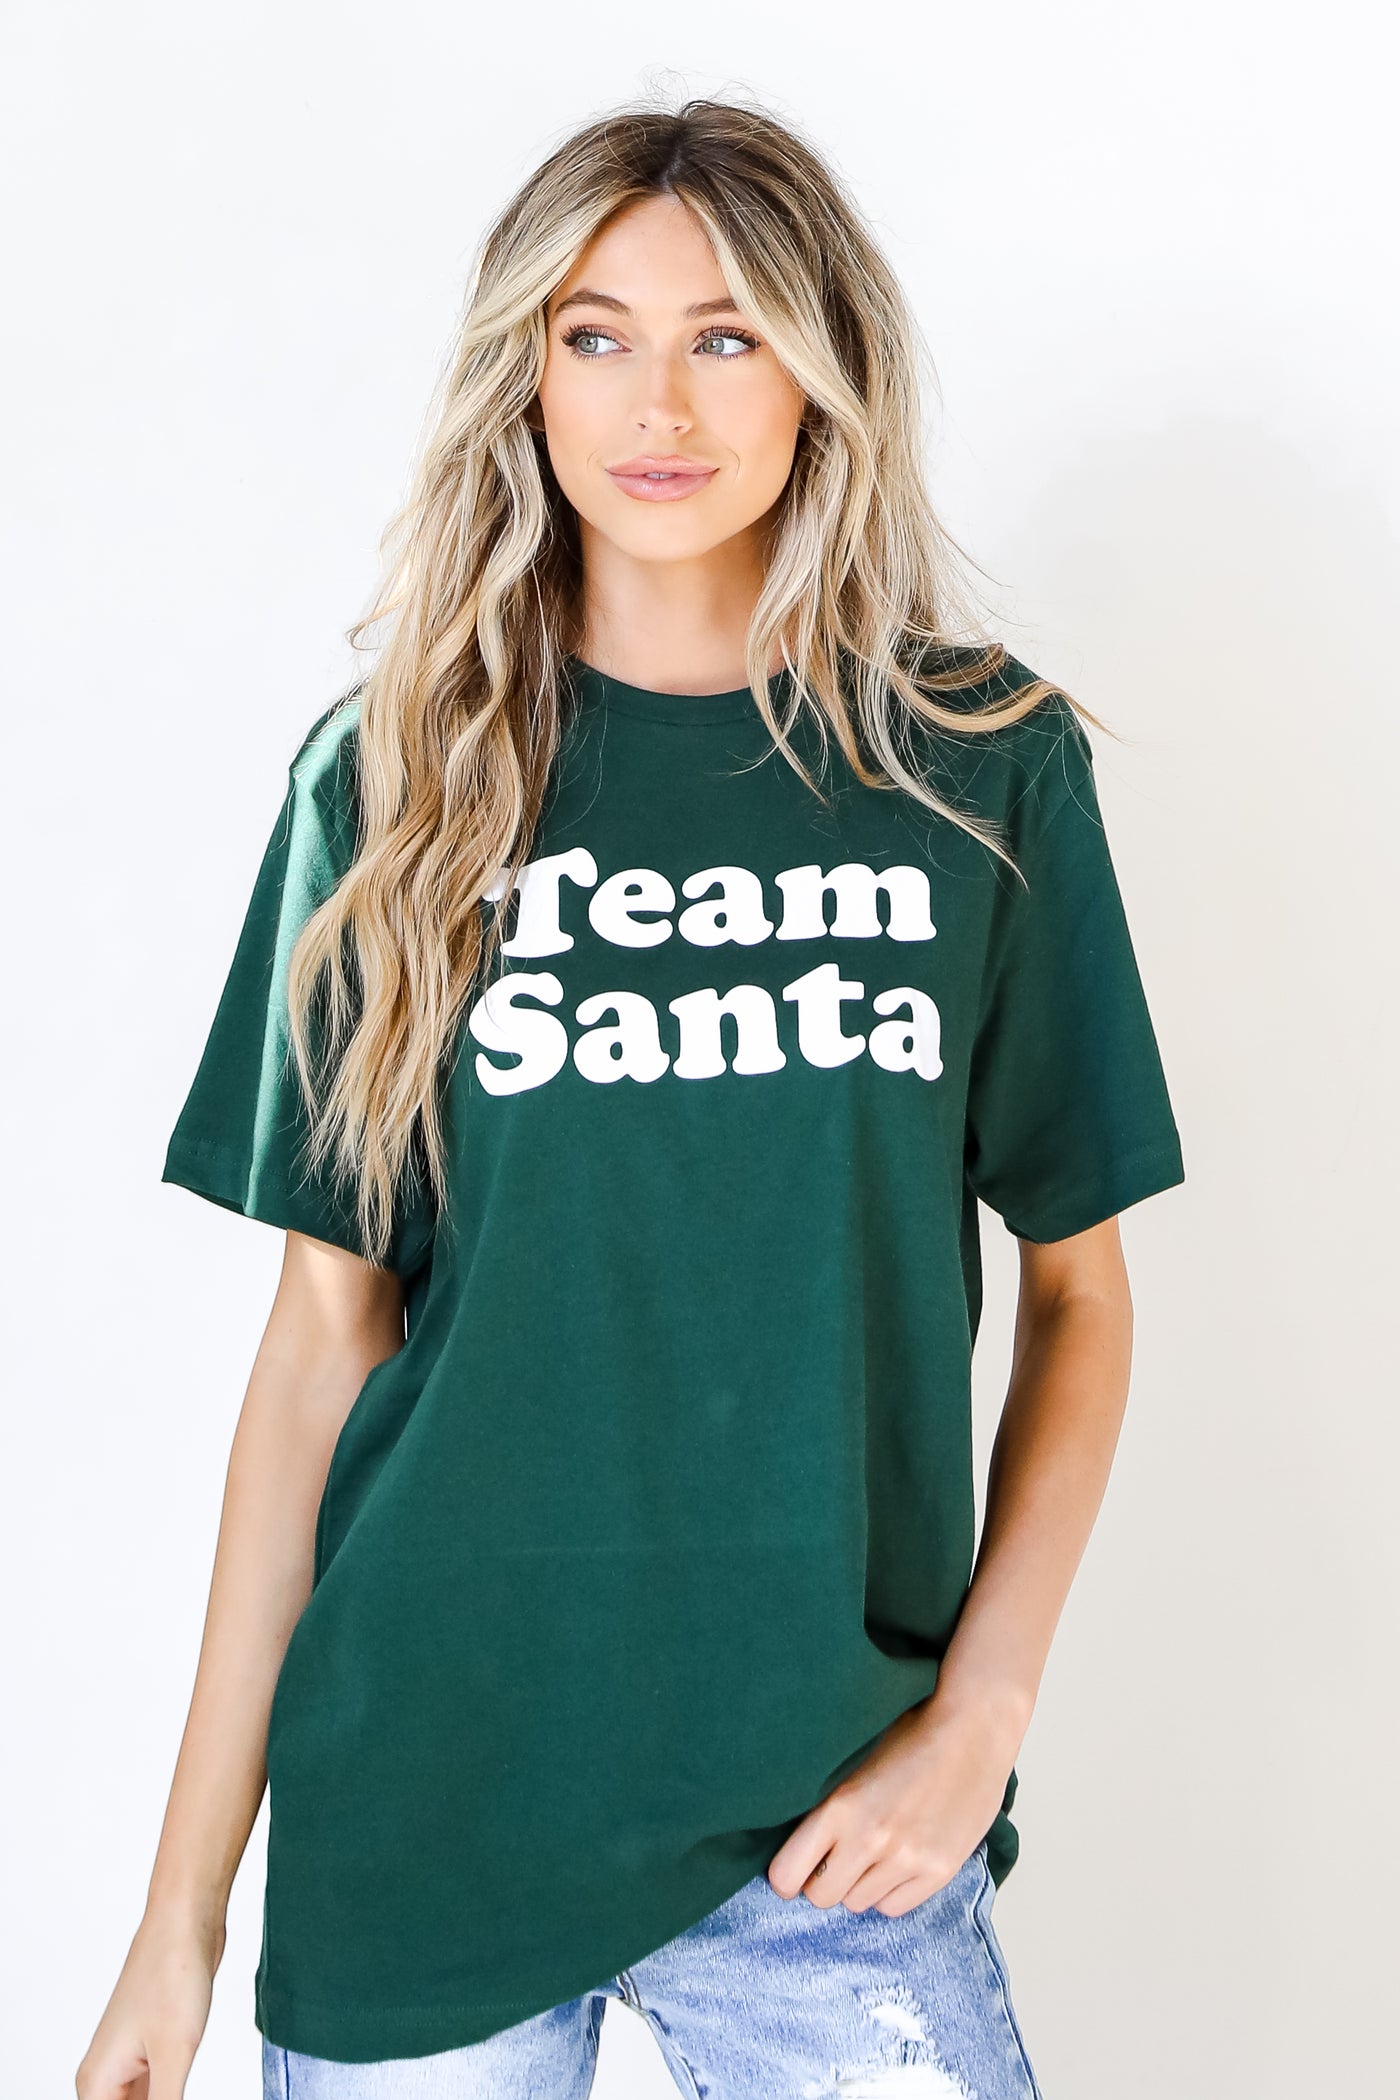 Team Santa Tee on model